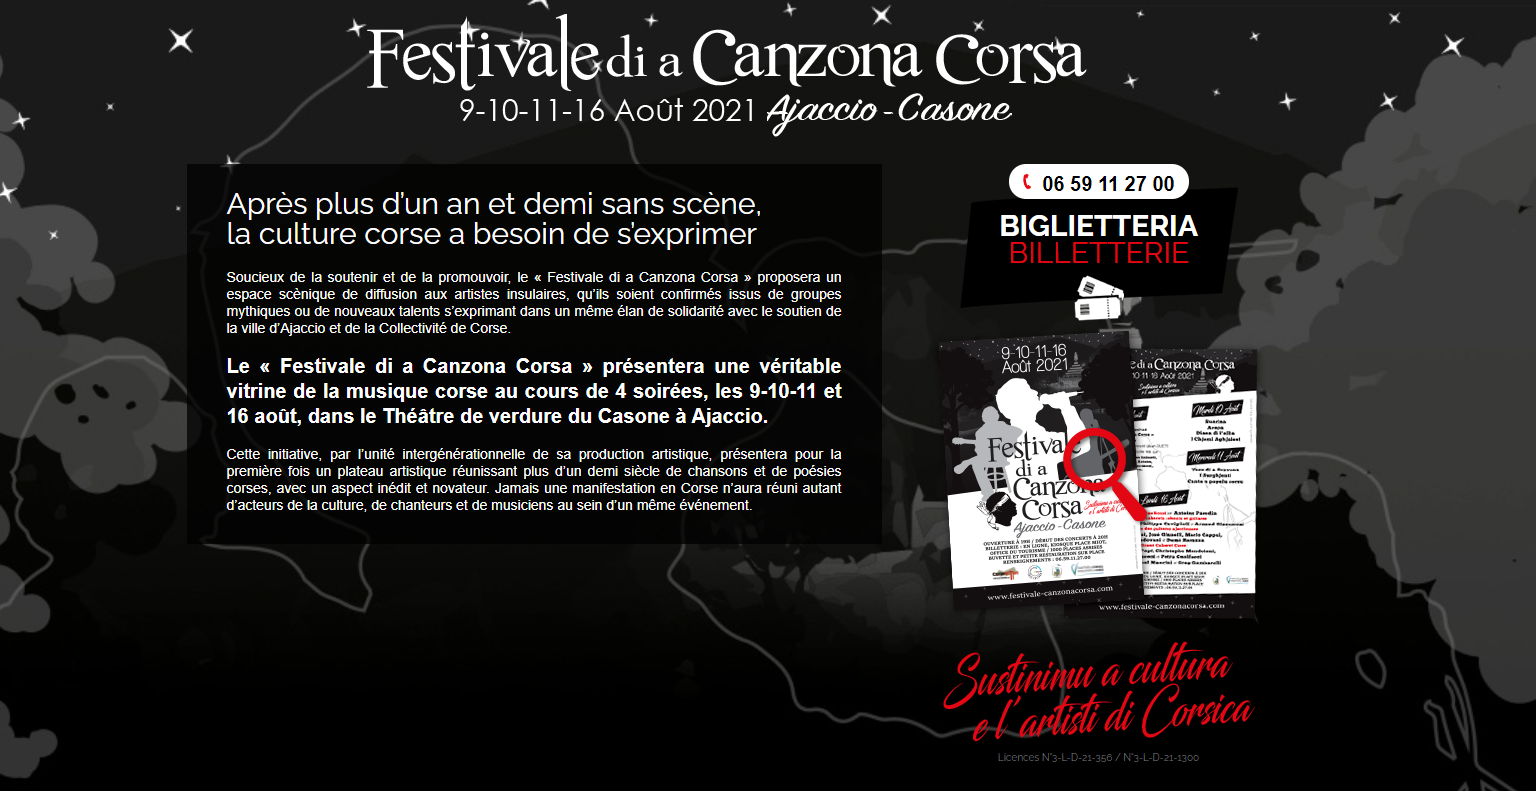 Festivale di a Canzona Corsa